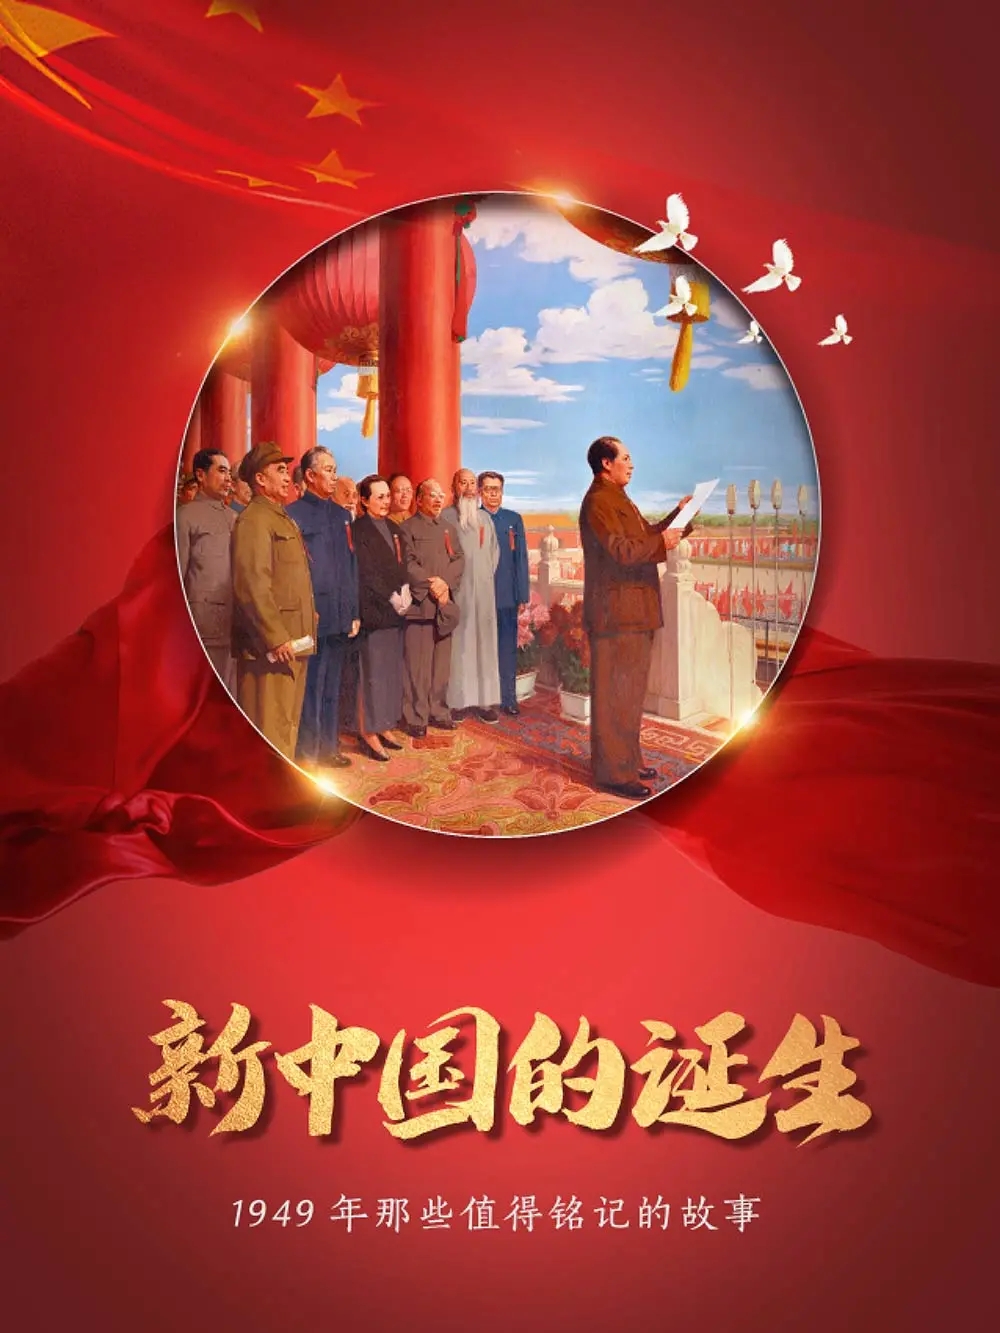 楚雄州图书馆 《新中国的诞生——1949年那些值得铭记的故事》微信展